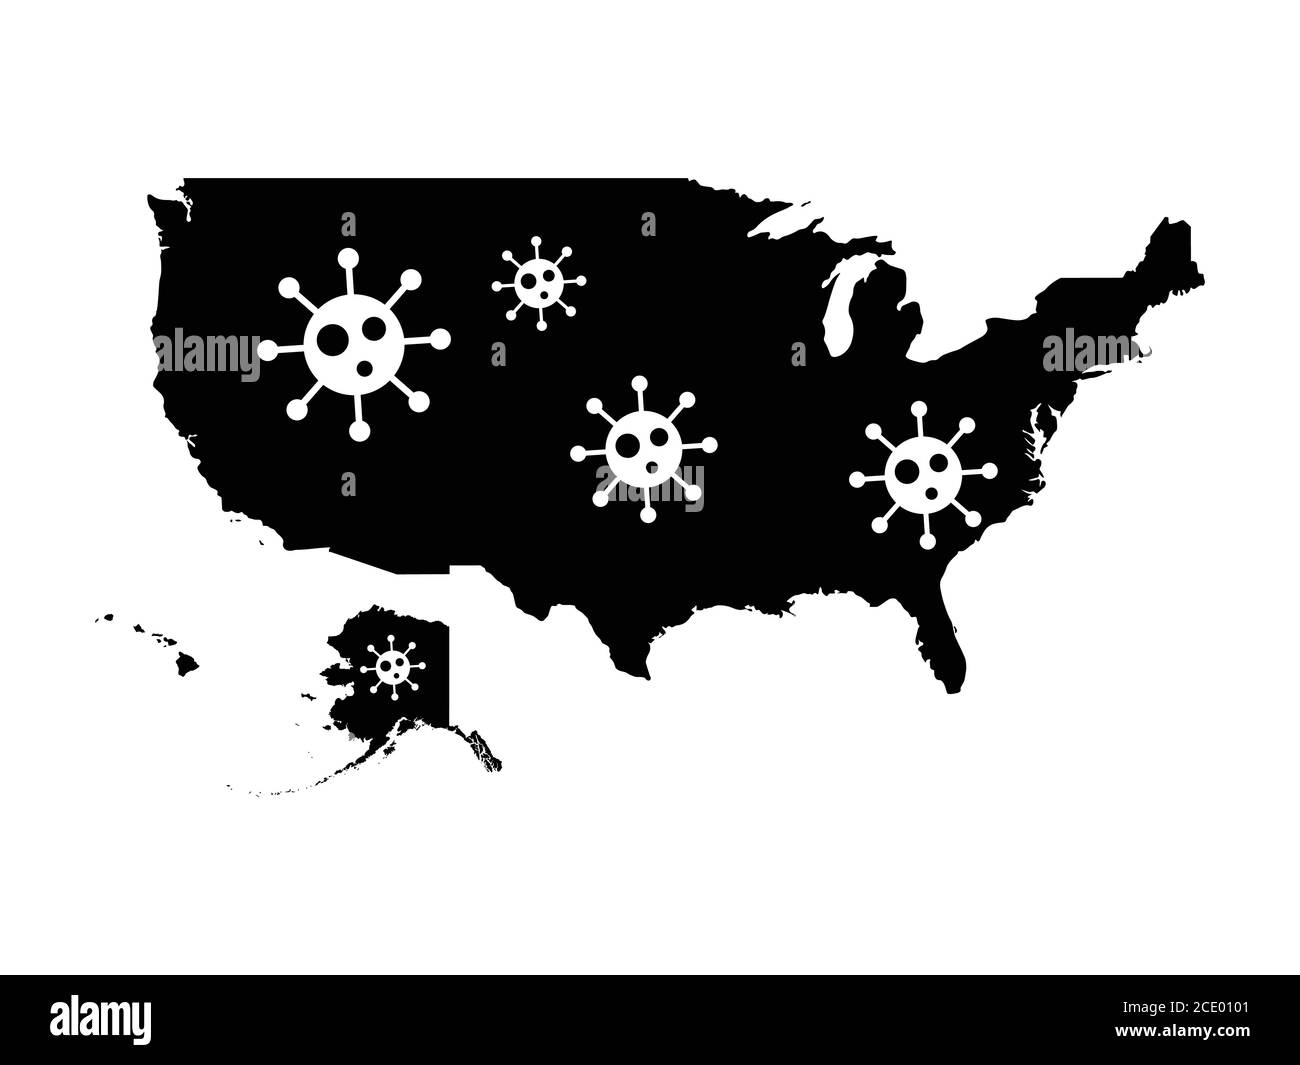 USA Map avec icône de virus. Pictogramme représentant le coronavirus covid-19 sur la carte des États-Unis d'Amérique. Vecteur EPS Illustration de Vecteur